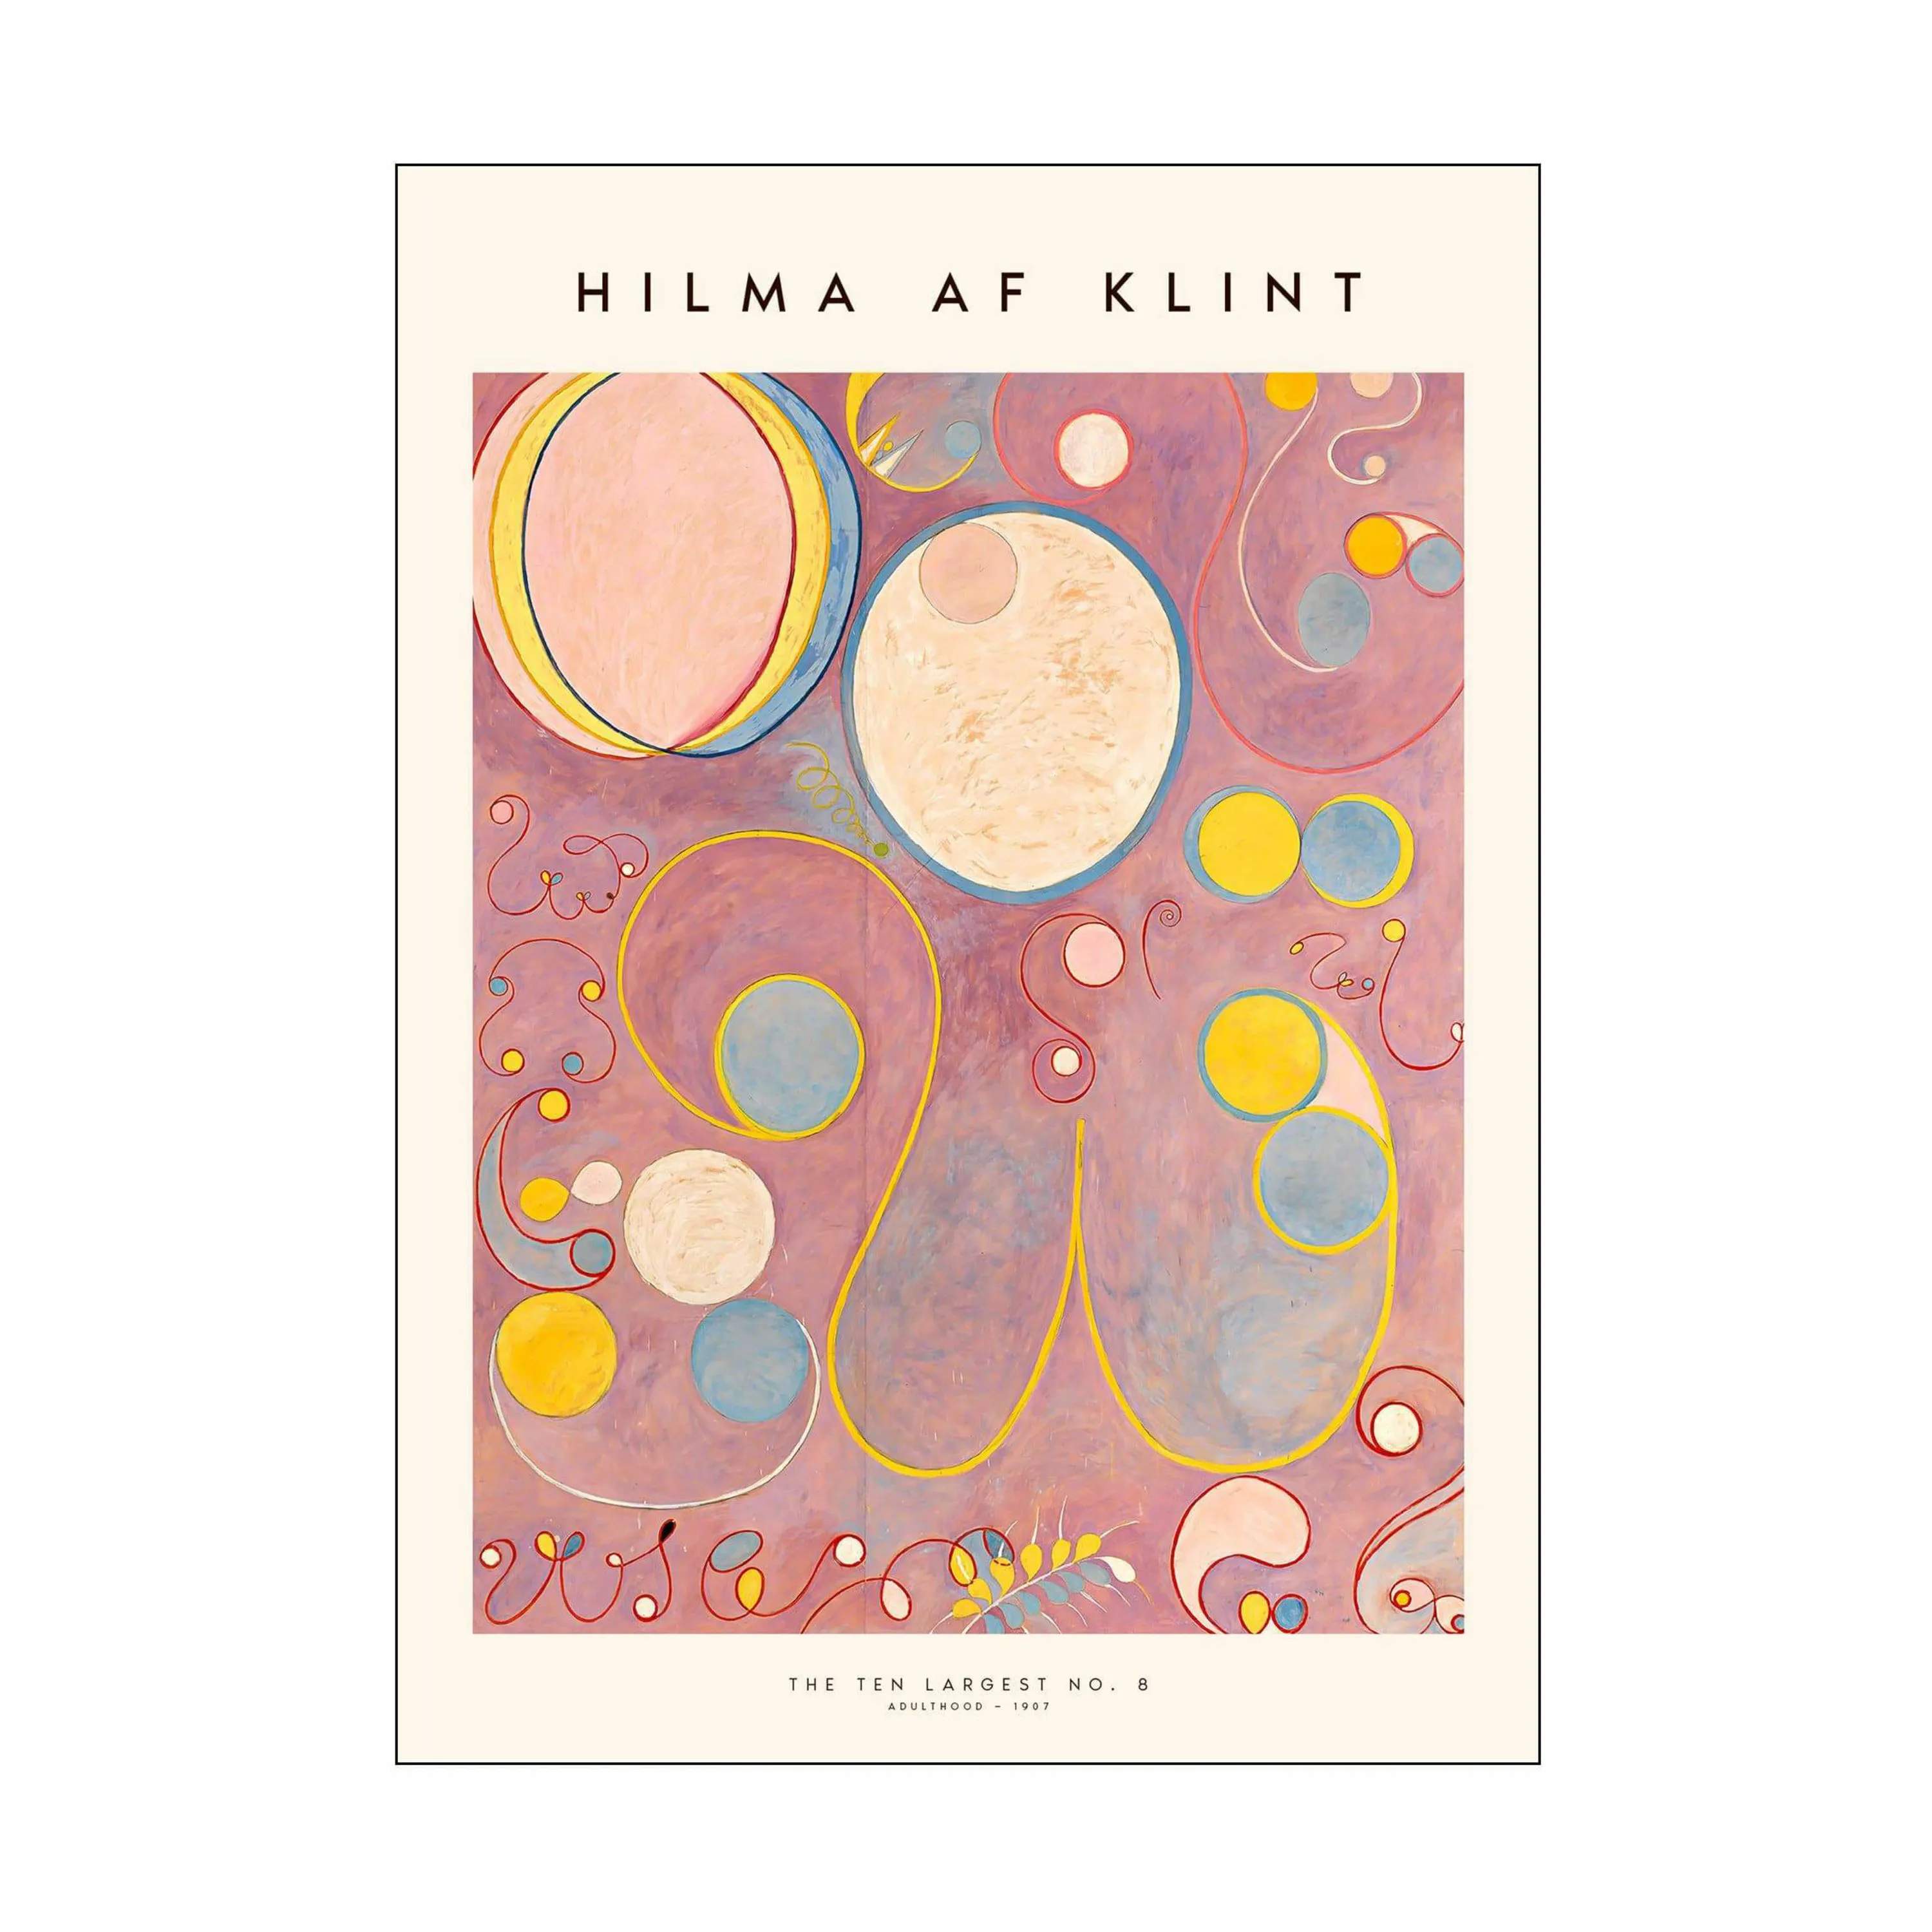 Hilma af Klint plakater Plakat - The ten largest no. 08